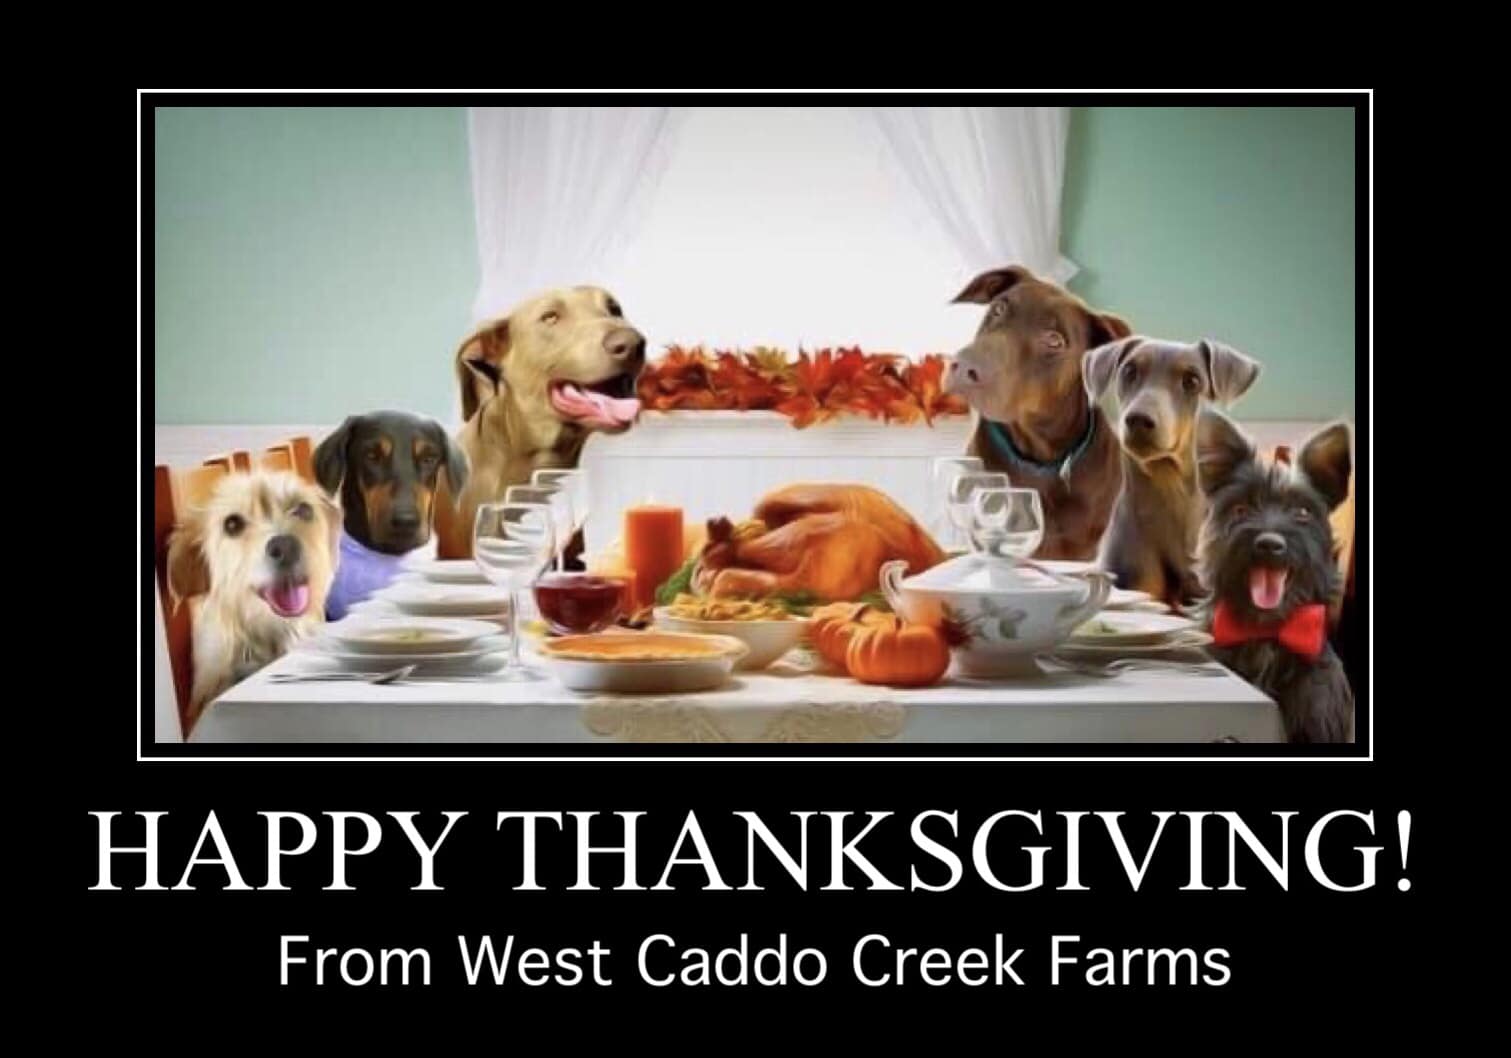 West Caddo Creek Farms, LLC 1289 County Rd 2739, Caddo Mills Texas 75135